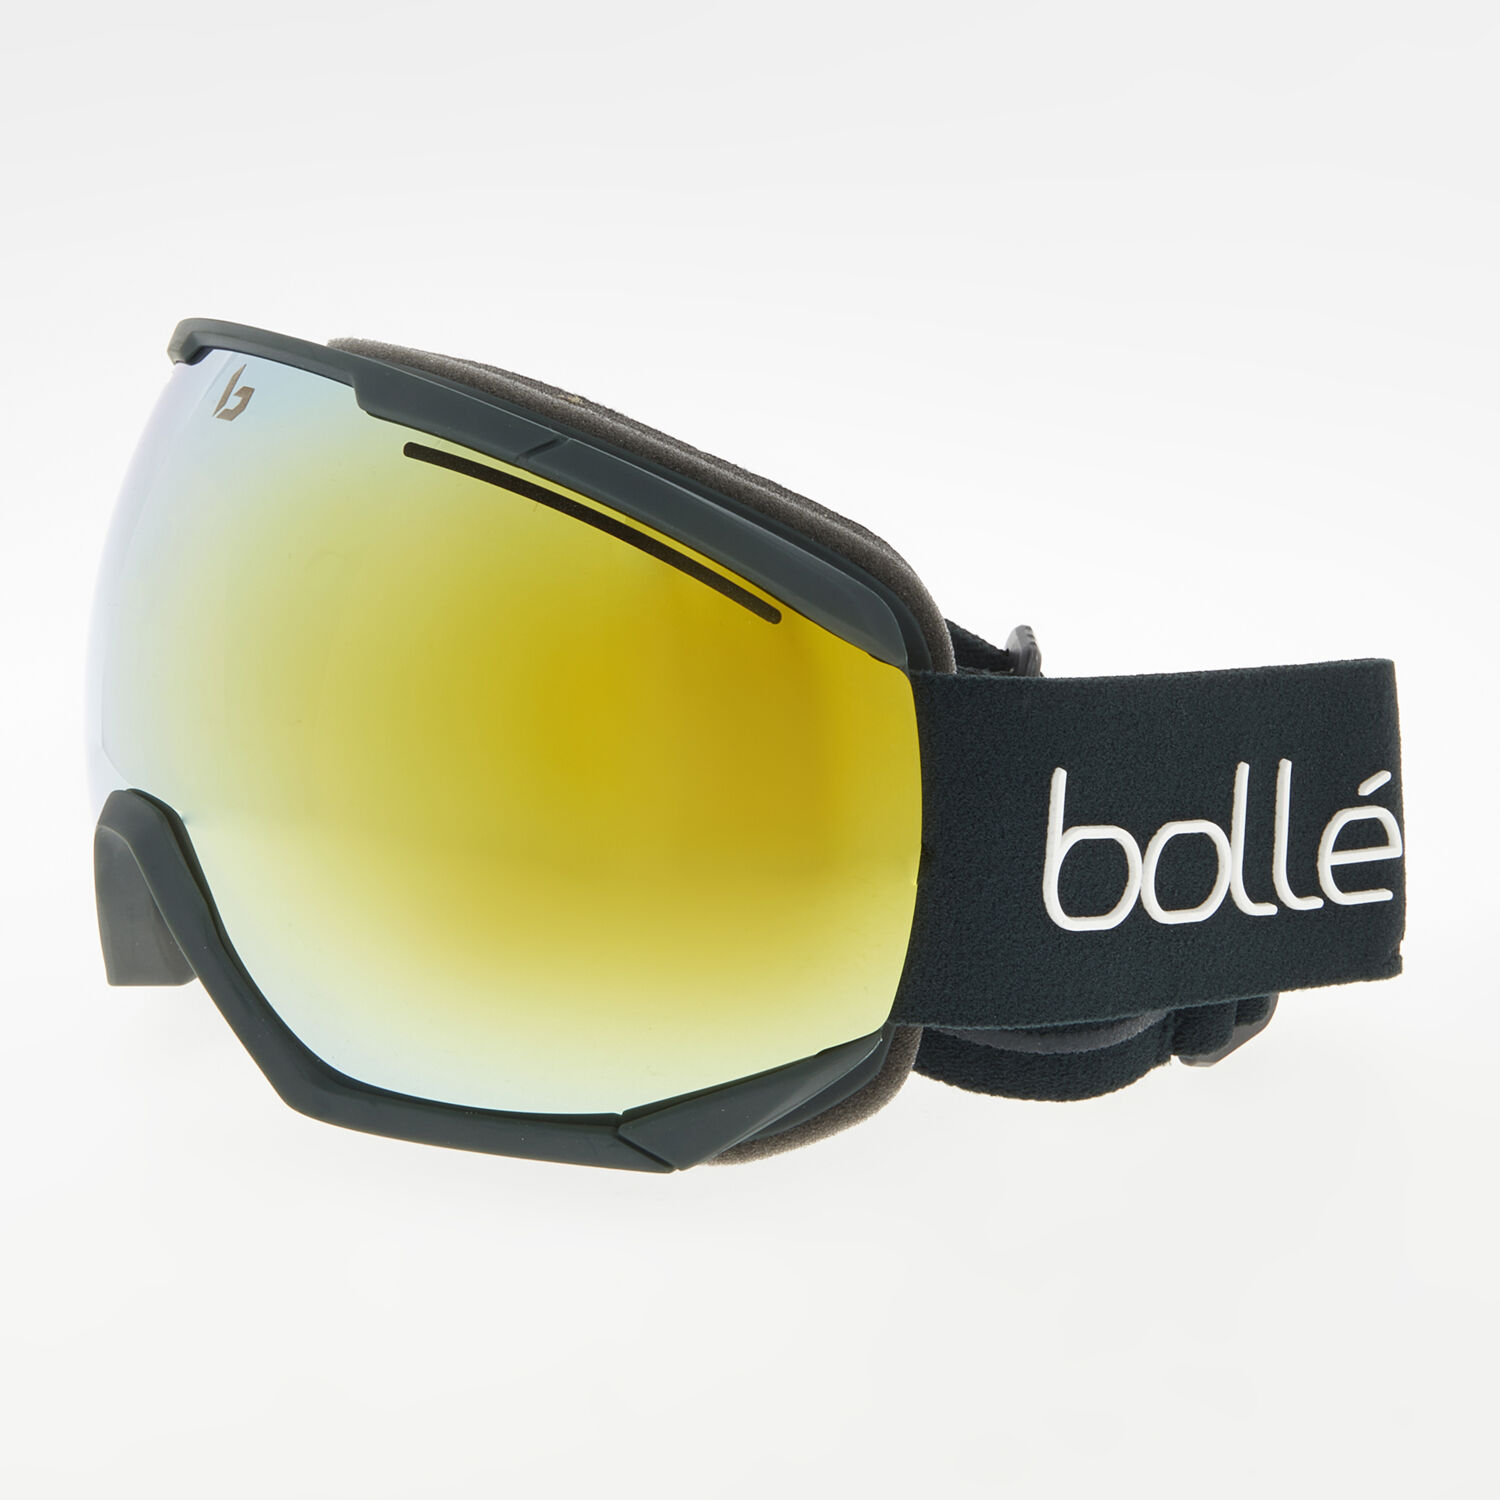 Зеленые лыжные очки Northstar Bolle